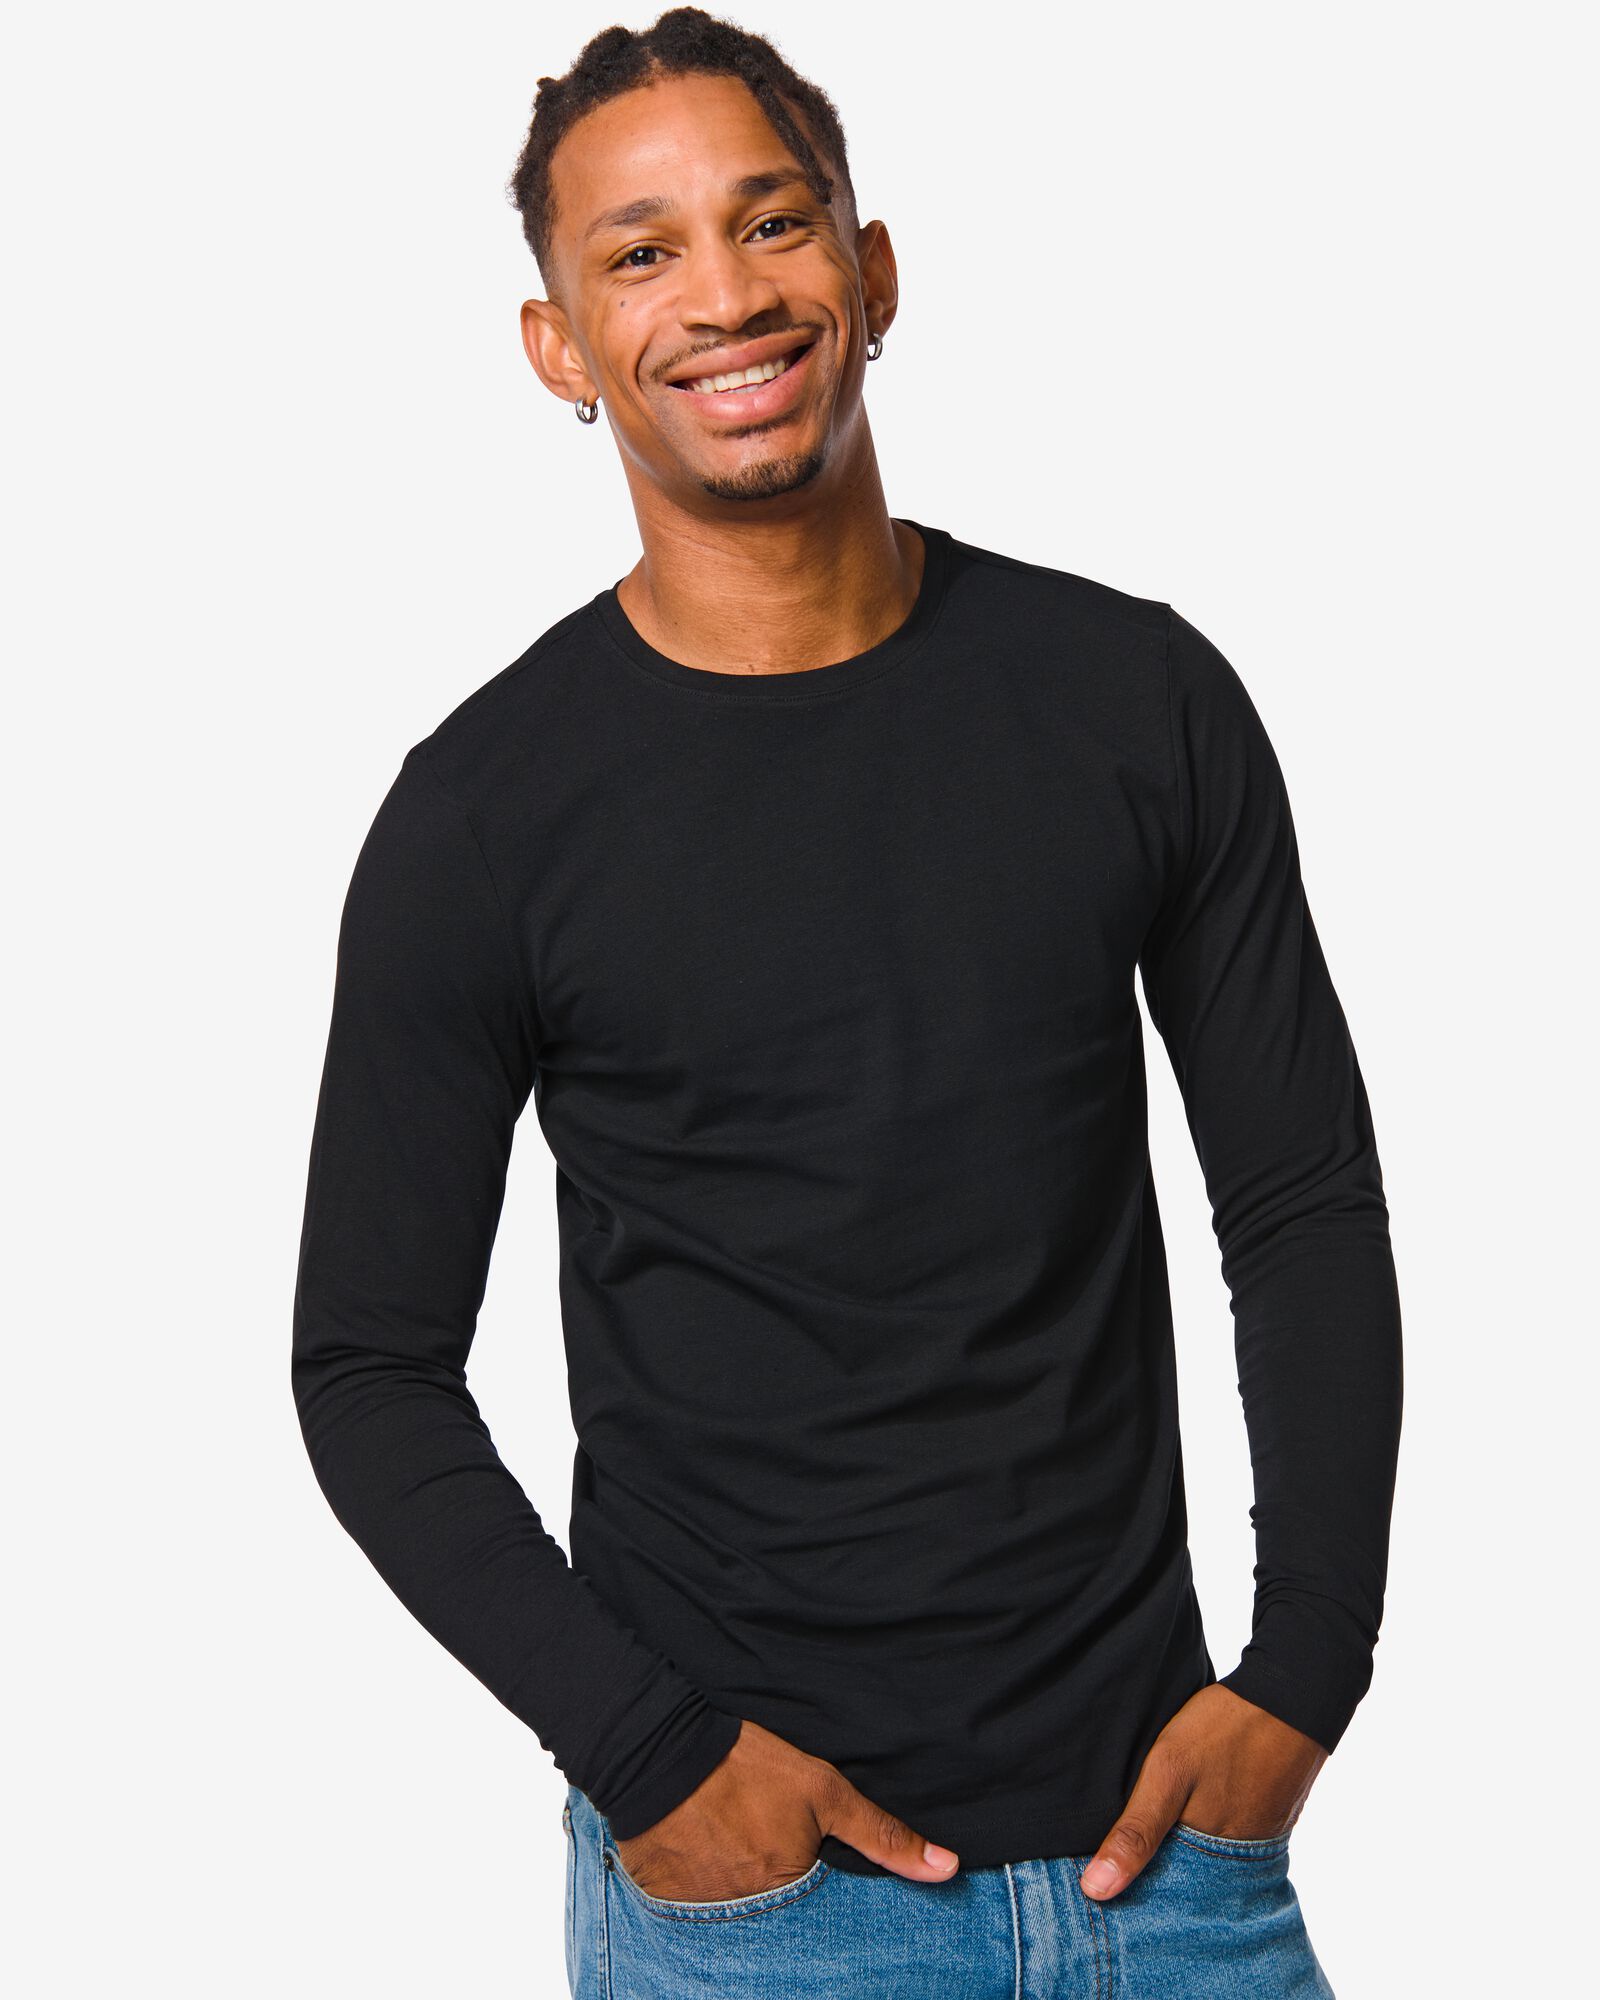 Image of HEMA Heren Shirt Slim Fit O-hals Lange Mouw Zwart (zwart)